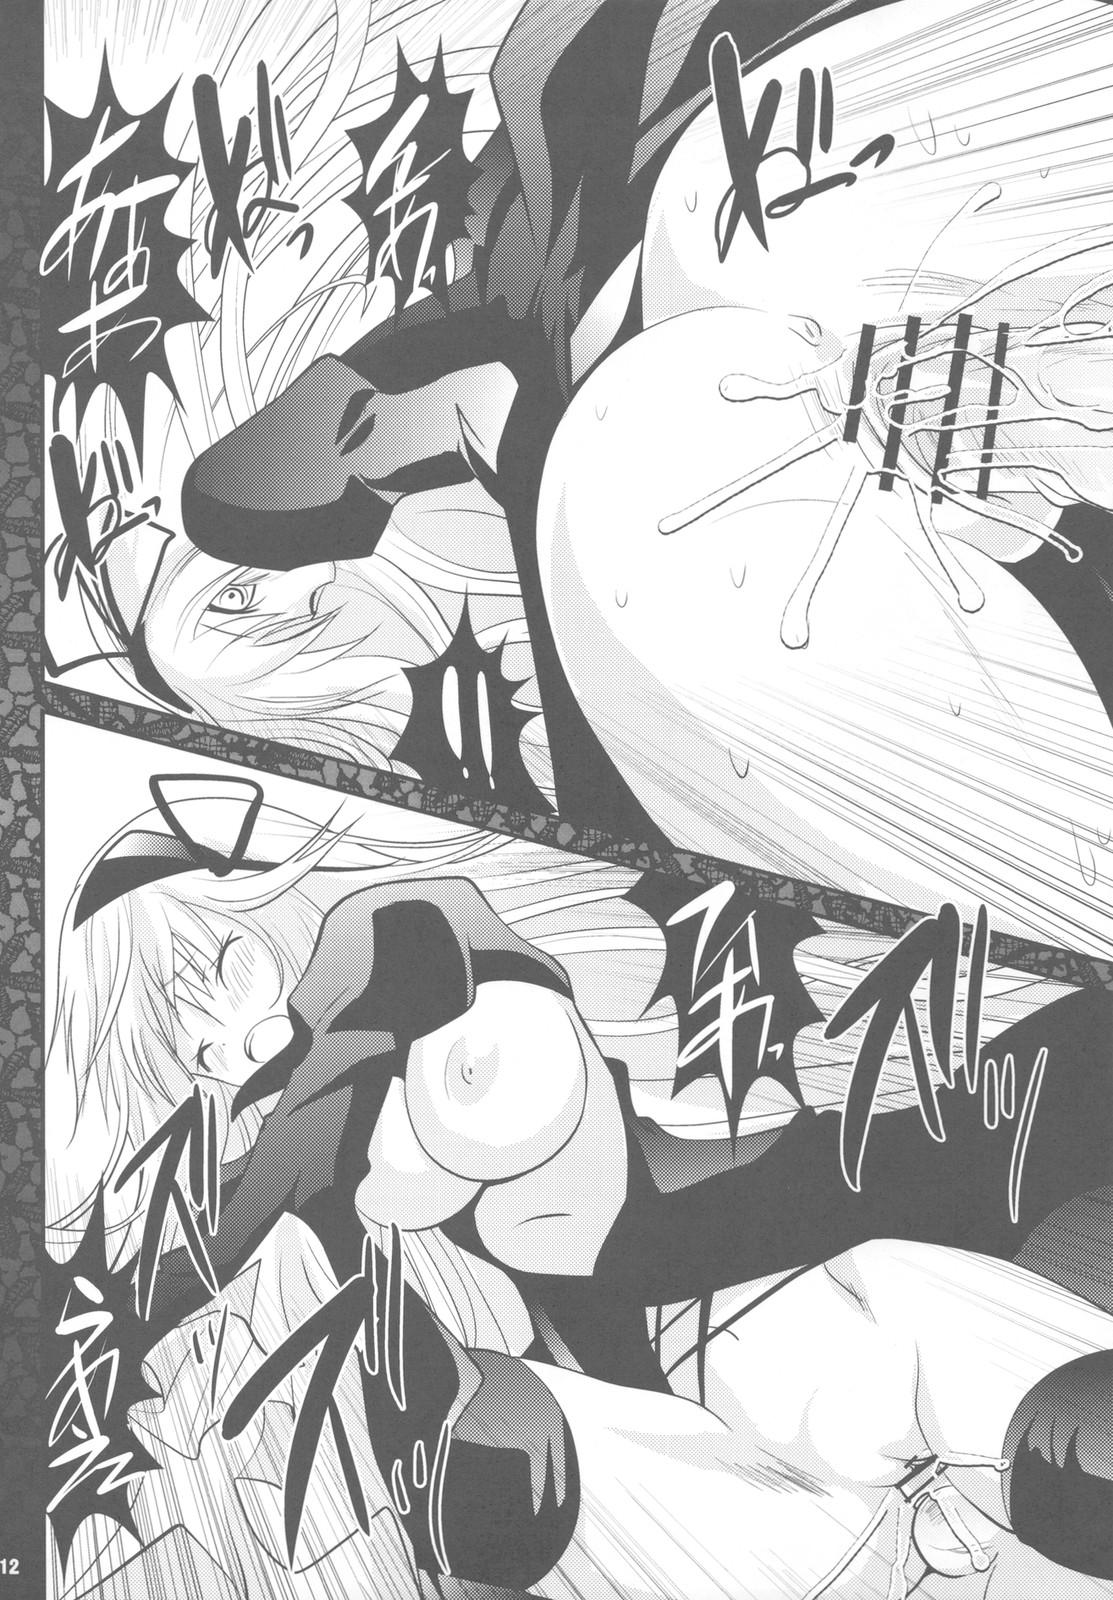 Fist Sono hoka no Sekai no Ganteihon - Rozen maiden Camgirls - Page 12